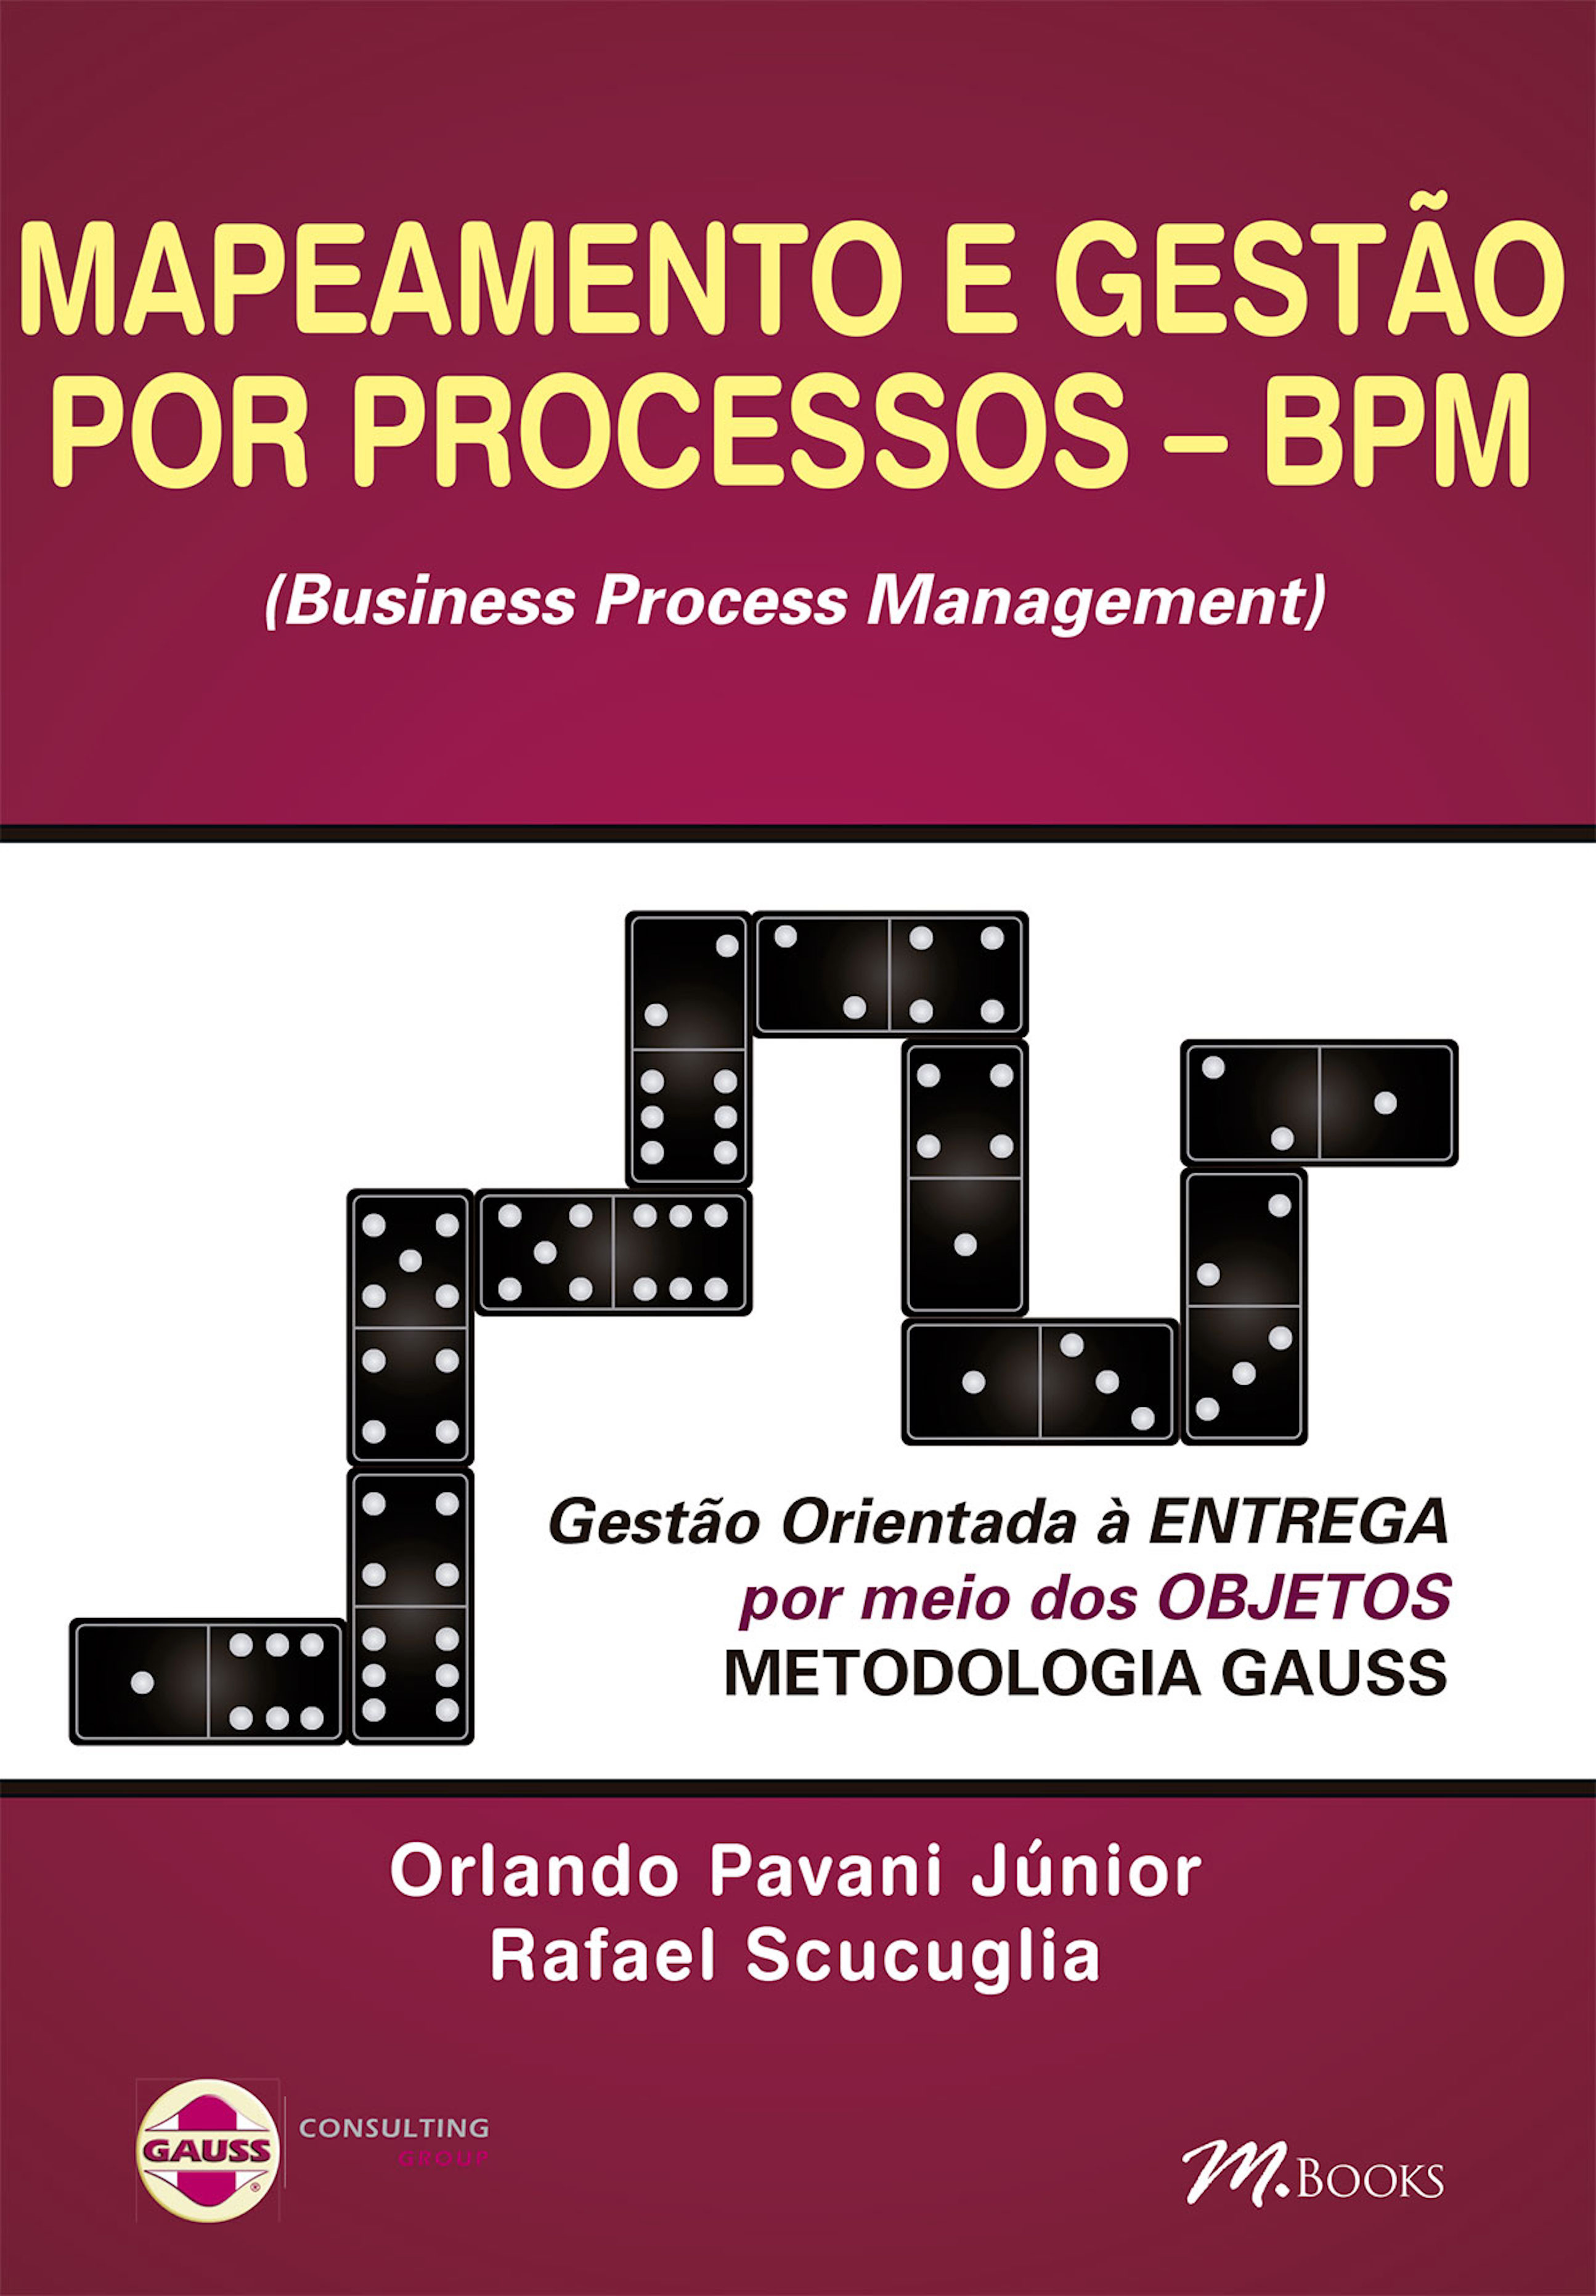 Mapeamento e gestão por processos - BPM